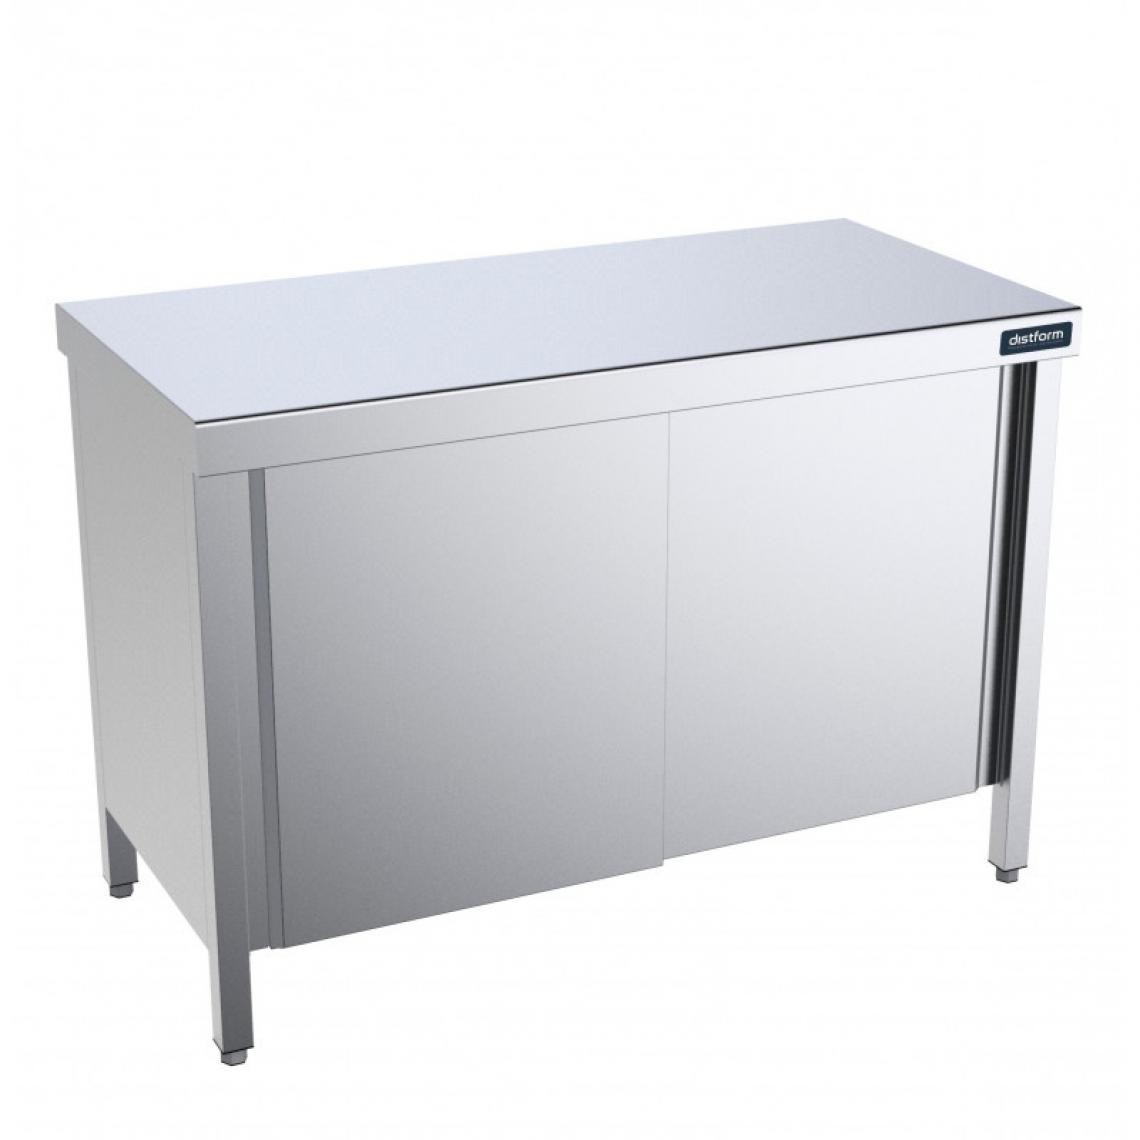 DISTFORM - Table Centrale avec Portes Battantes Profondeur 700mm - Distform - Acier inoxydable1200x700 - Tables à manger